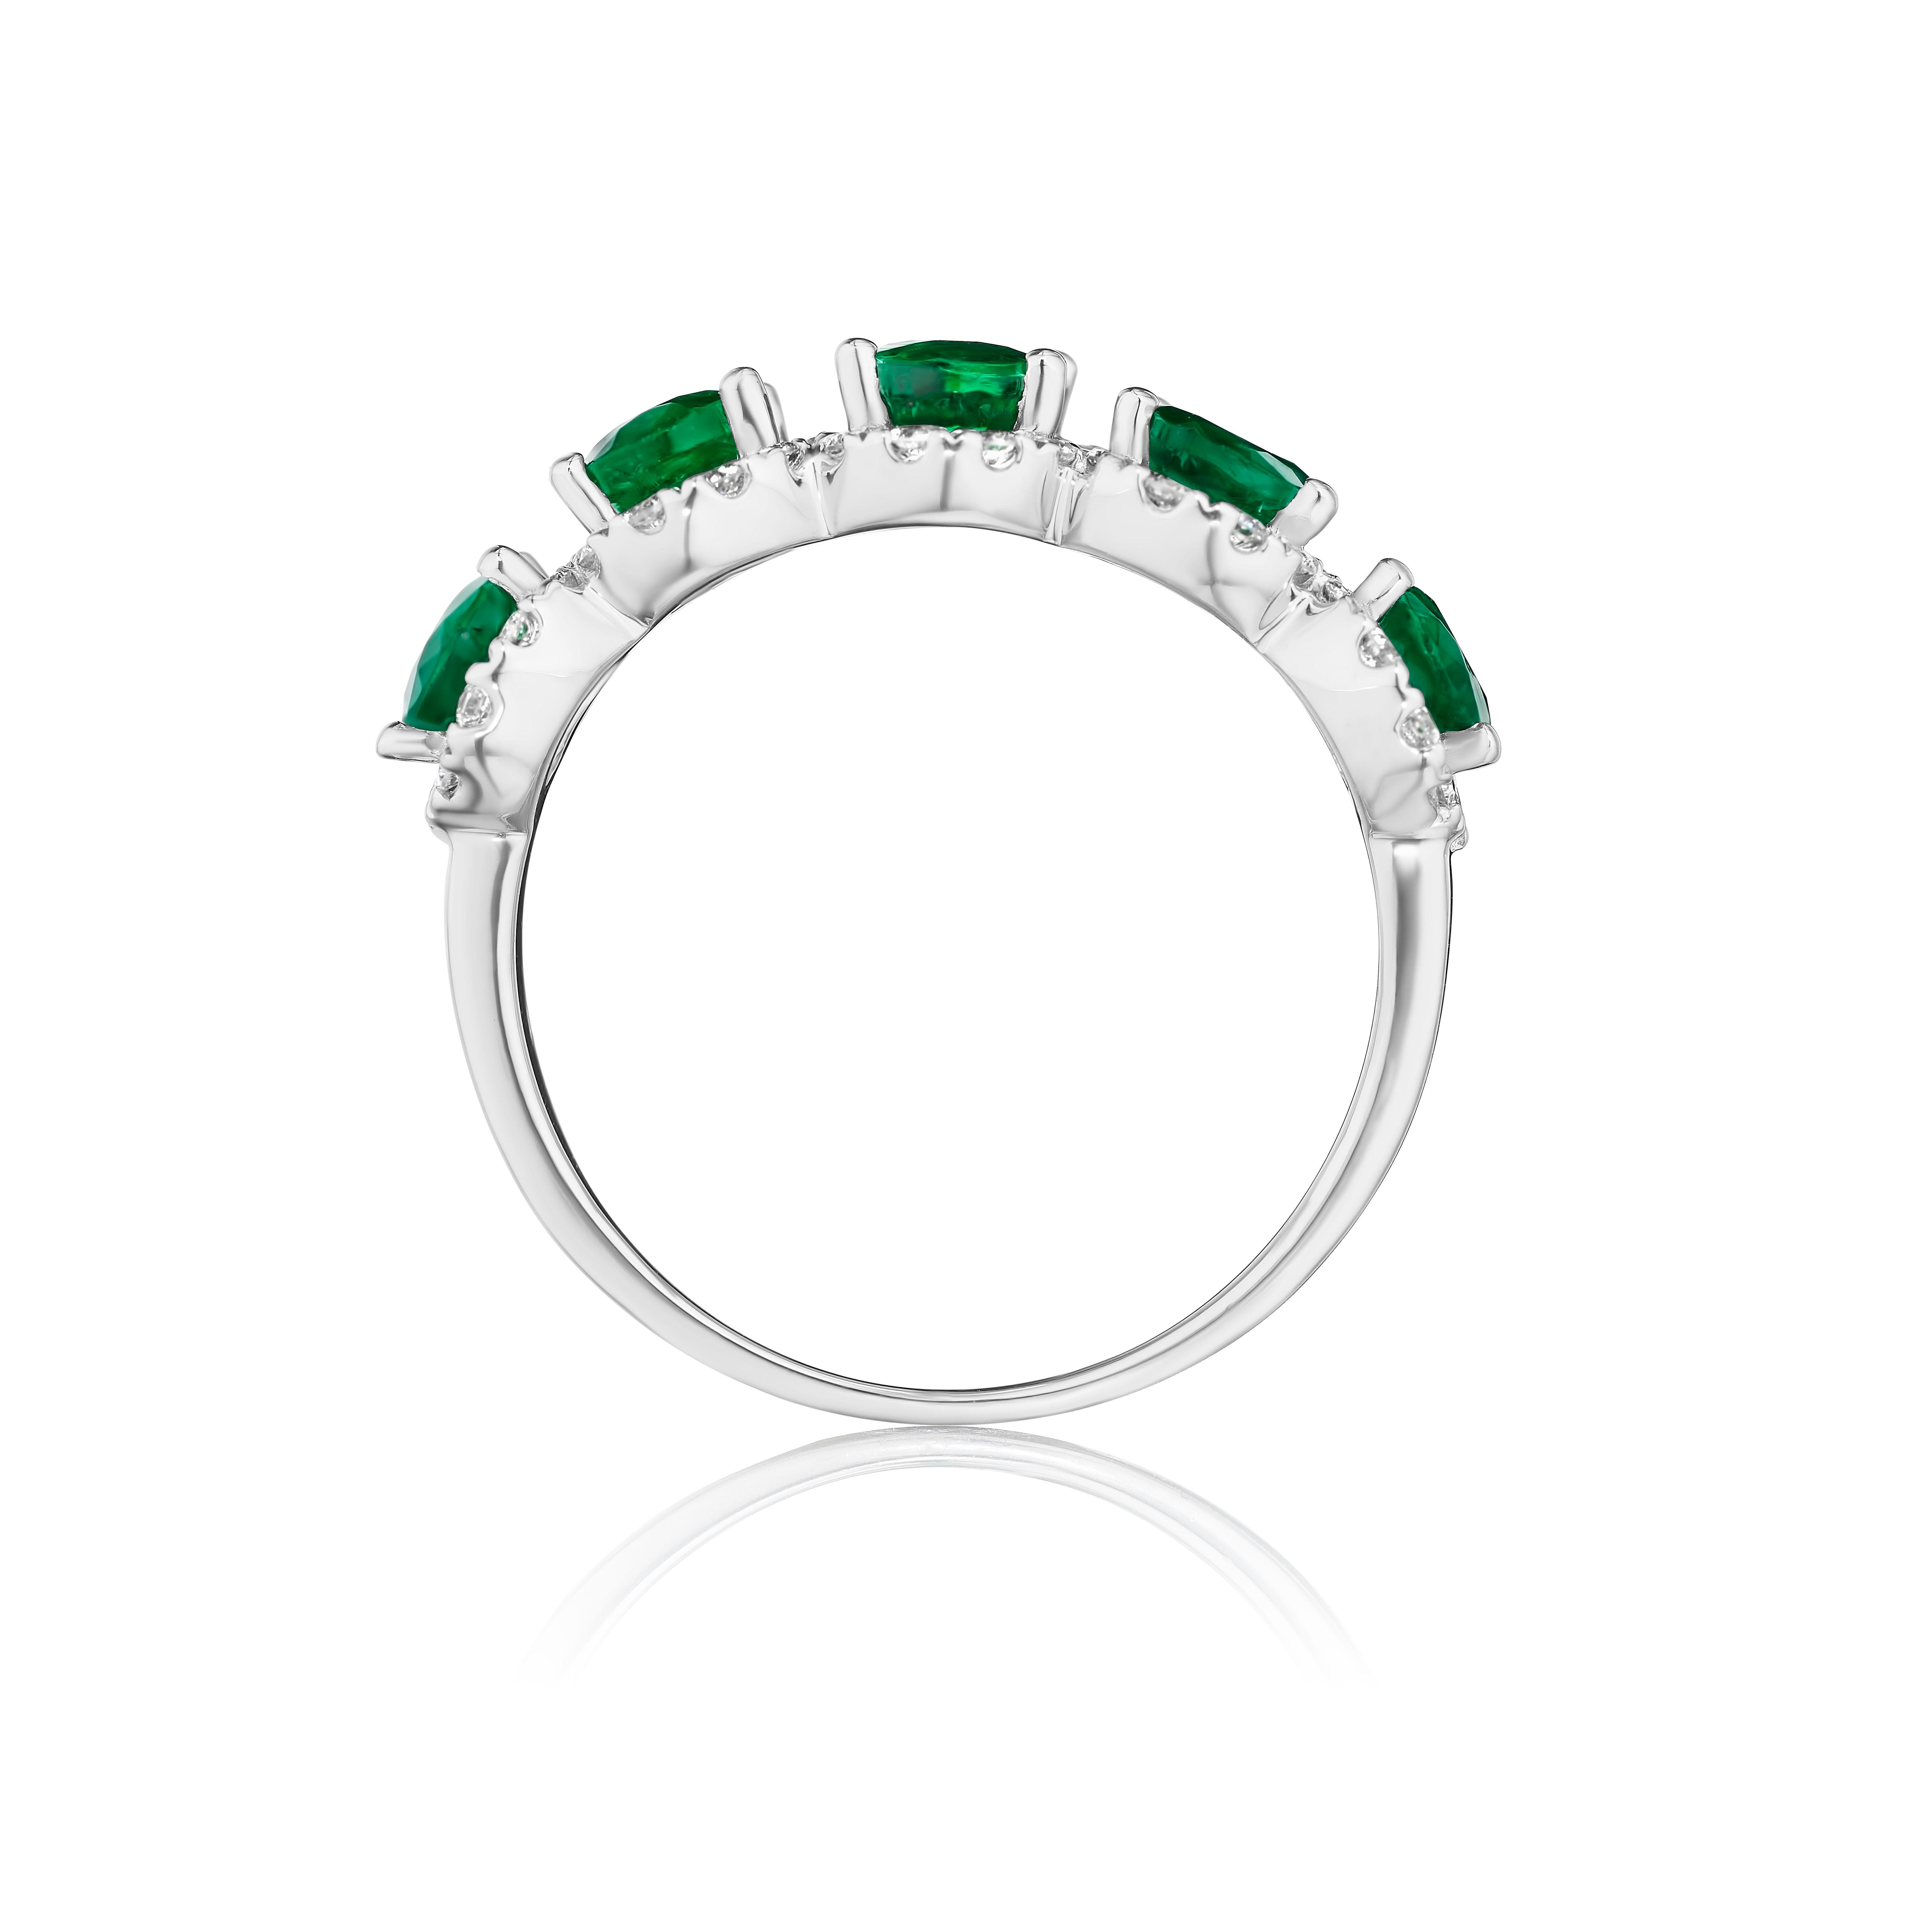 • Réalisé en or 14KT, ce bracelet est composé de 5 émeraudes vertes de taille ovale encadrées par un délicat halo composé de diamants ronds de taille brillant. L'anneau a un poids total combiné d'environ 3.55 carats. 

A porter seul ou avec d'autres